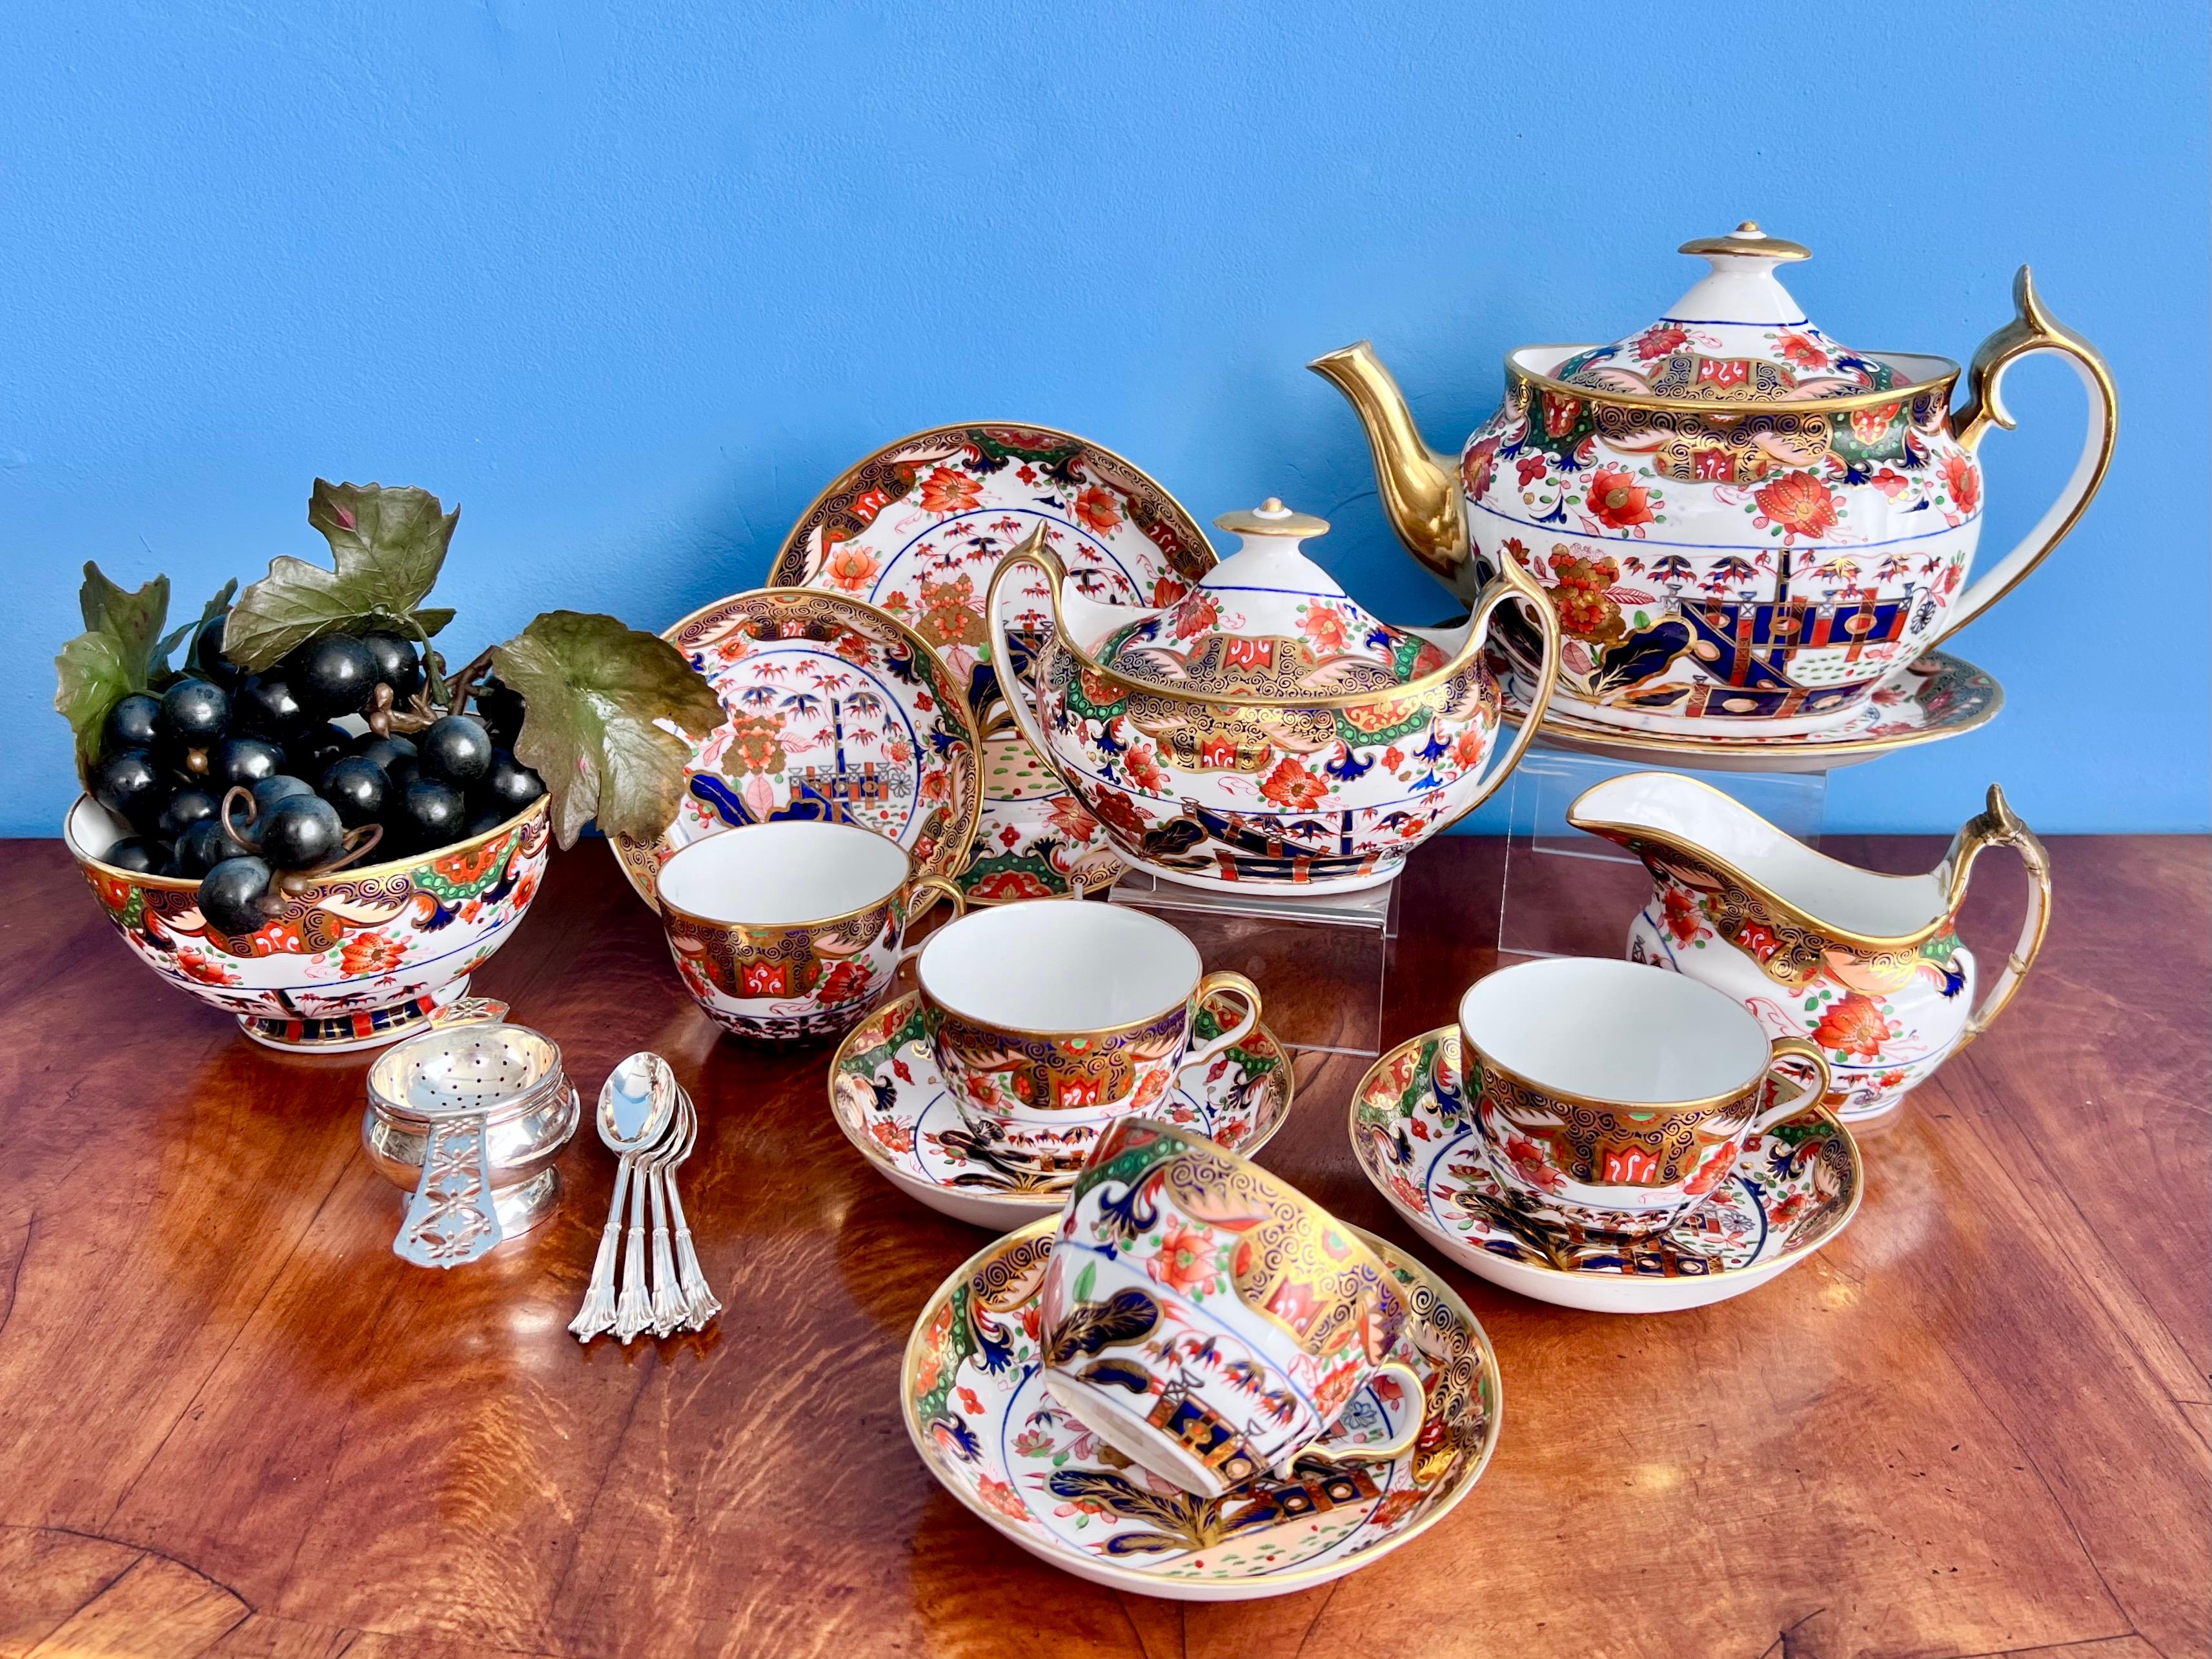 Il s'agit d'un superbe service à thé fabriqué par Spode vers 1810, composé d'une grande théière avec couvercle, d'un pot à lait, d'un sucrier avec couvercle, d'un saladier, d'une soucoupe et de 4 tasses à thé avec soucoupes. Le service est décoré du